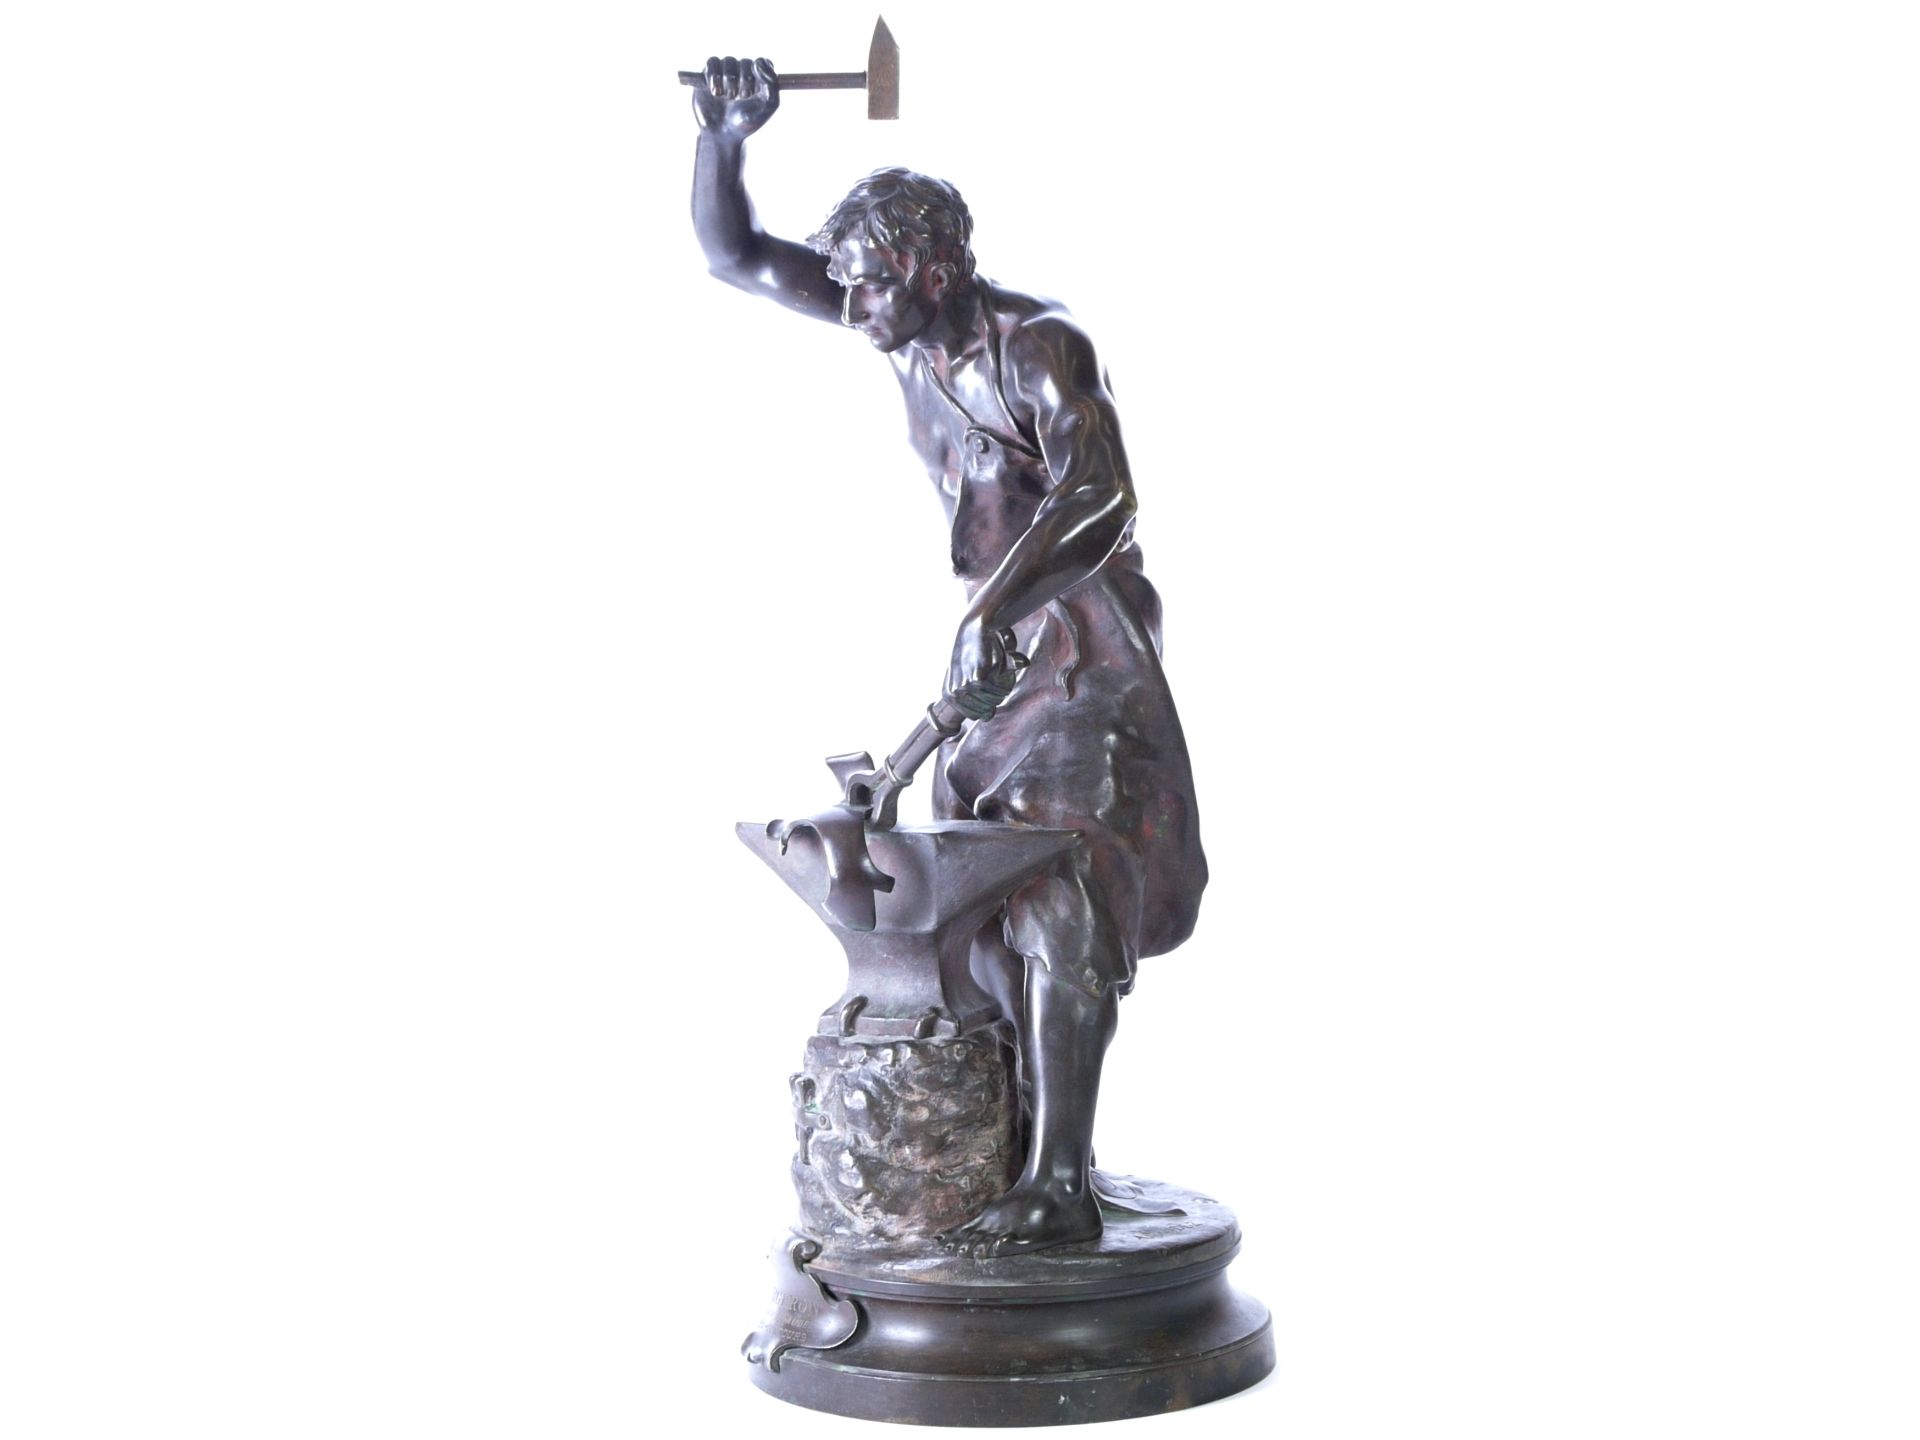 Gaudez, Adrien Etienne (1845-1902) - Große Bronze "Der Schmied" - Bild 5 aus 11